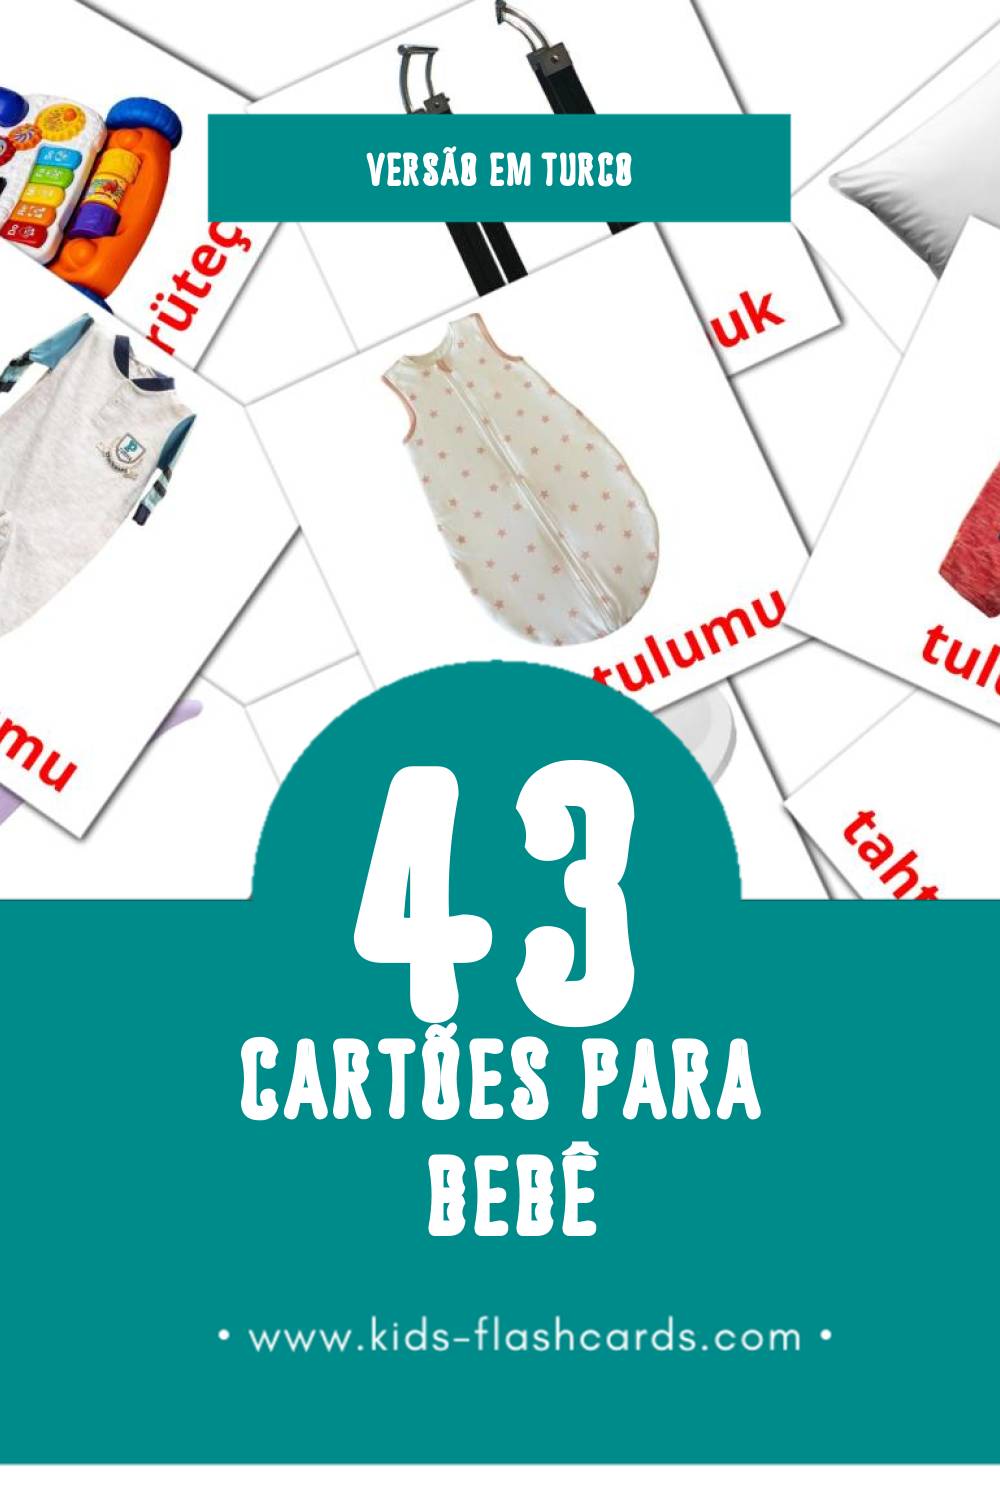 Flashcards de Bebek Visuais para Toddlers (43 cartões em Turco)